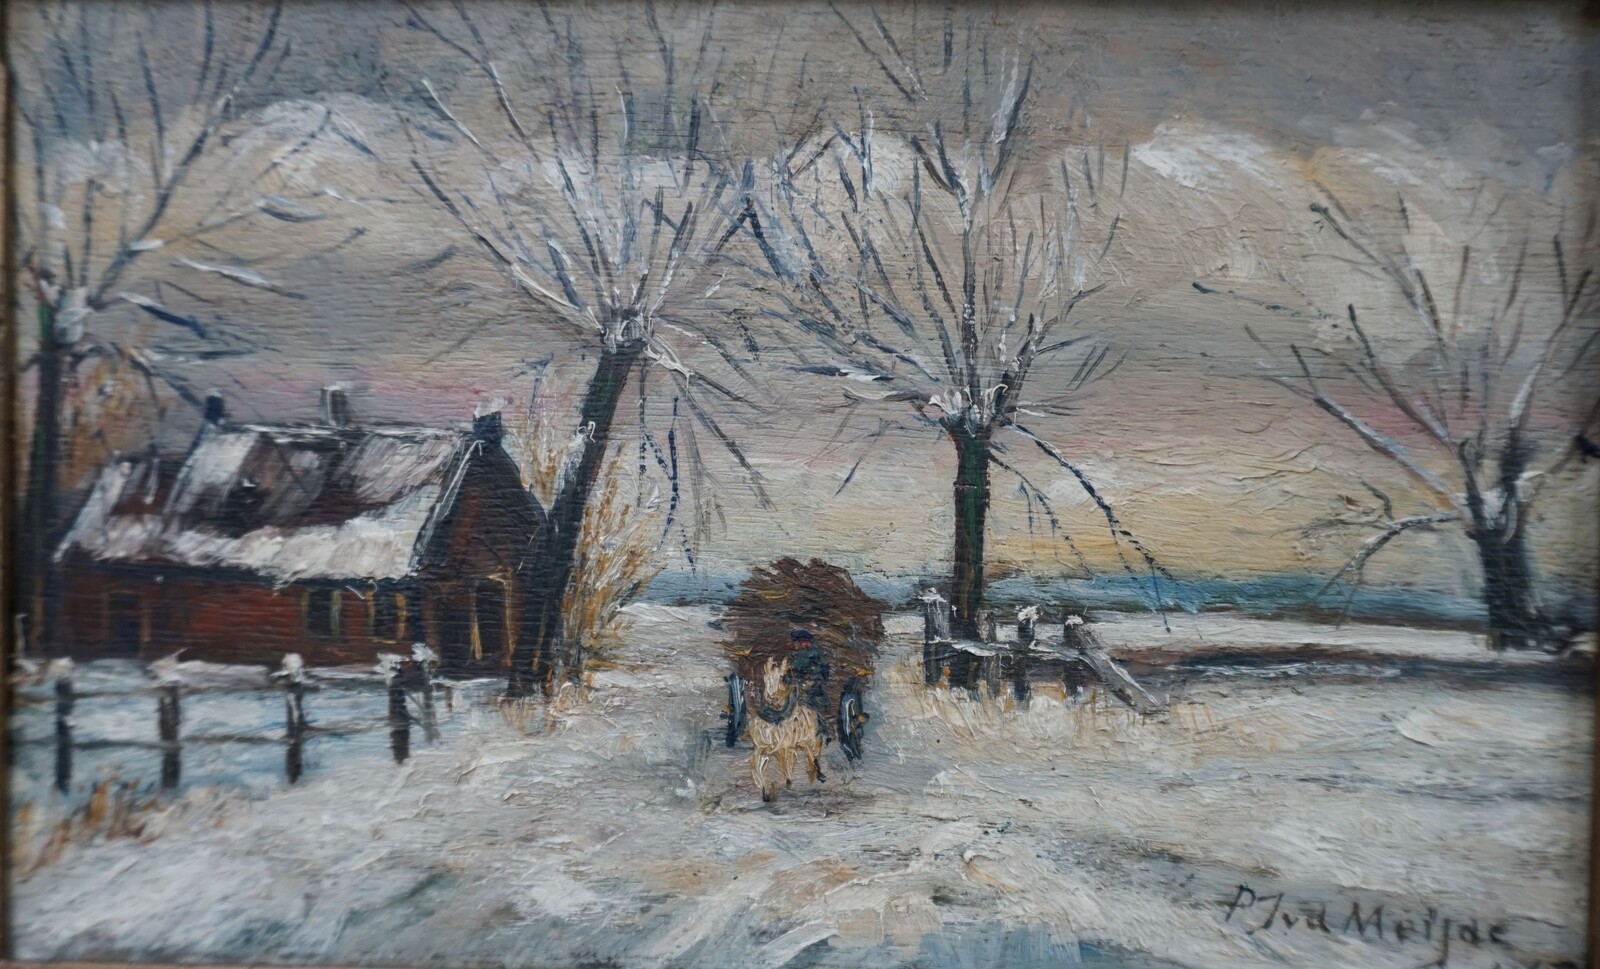 P.J.v d Meijde winter scene